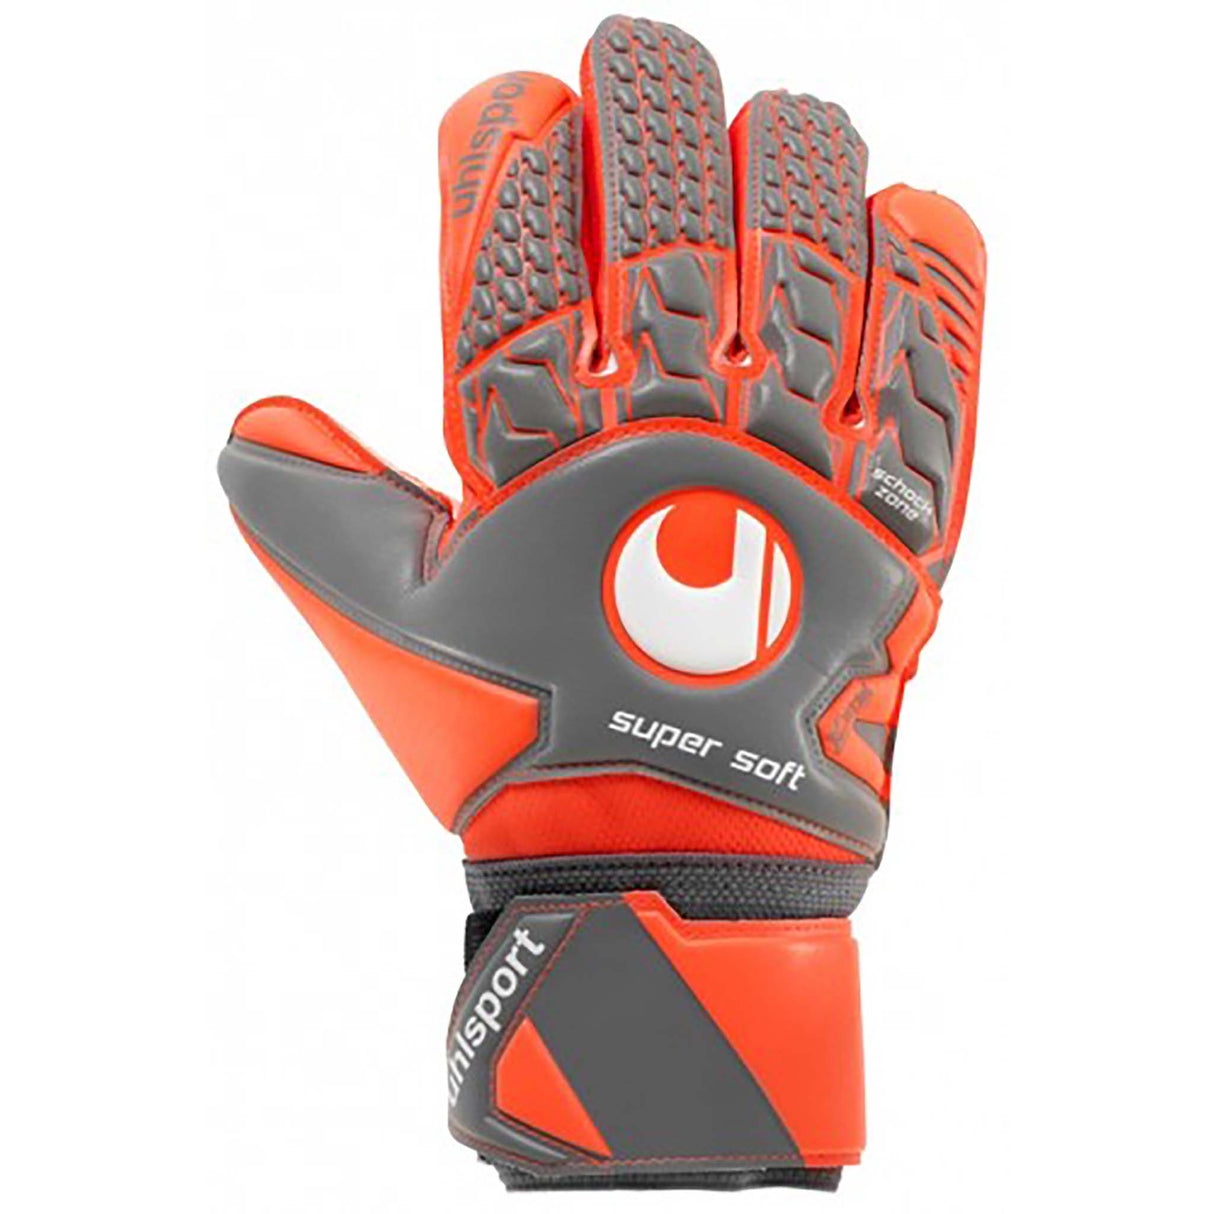 Uhlsport Aerored Supersoft gants de soccer dos